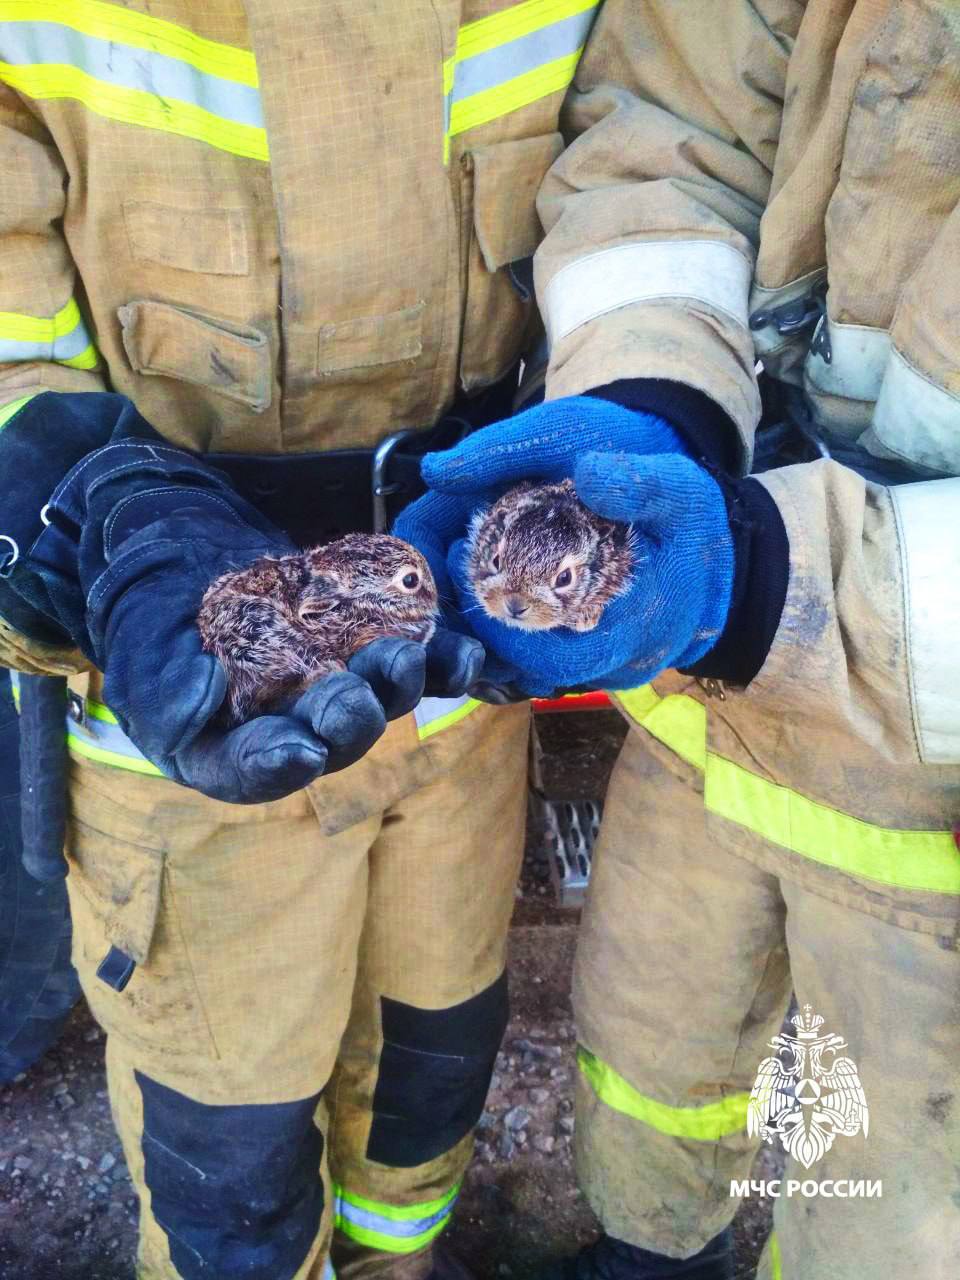 Малюсеньких зайчат спасли в горящем поле в ДНР